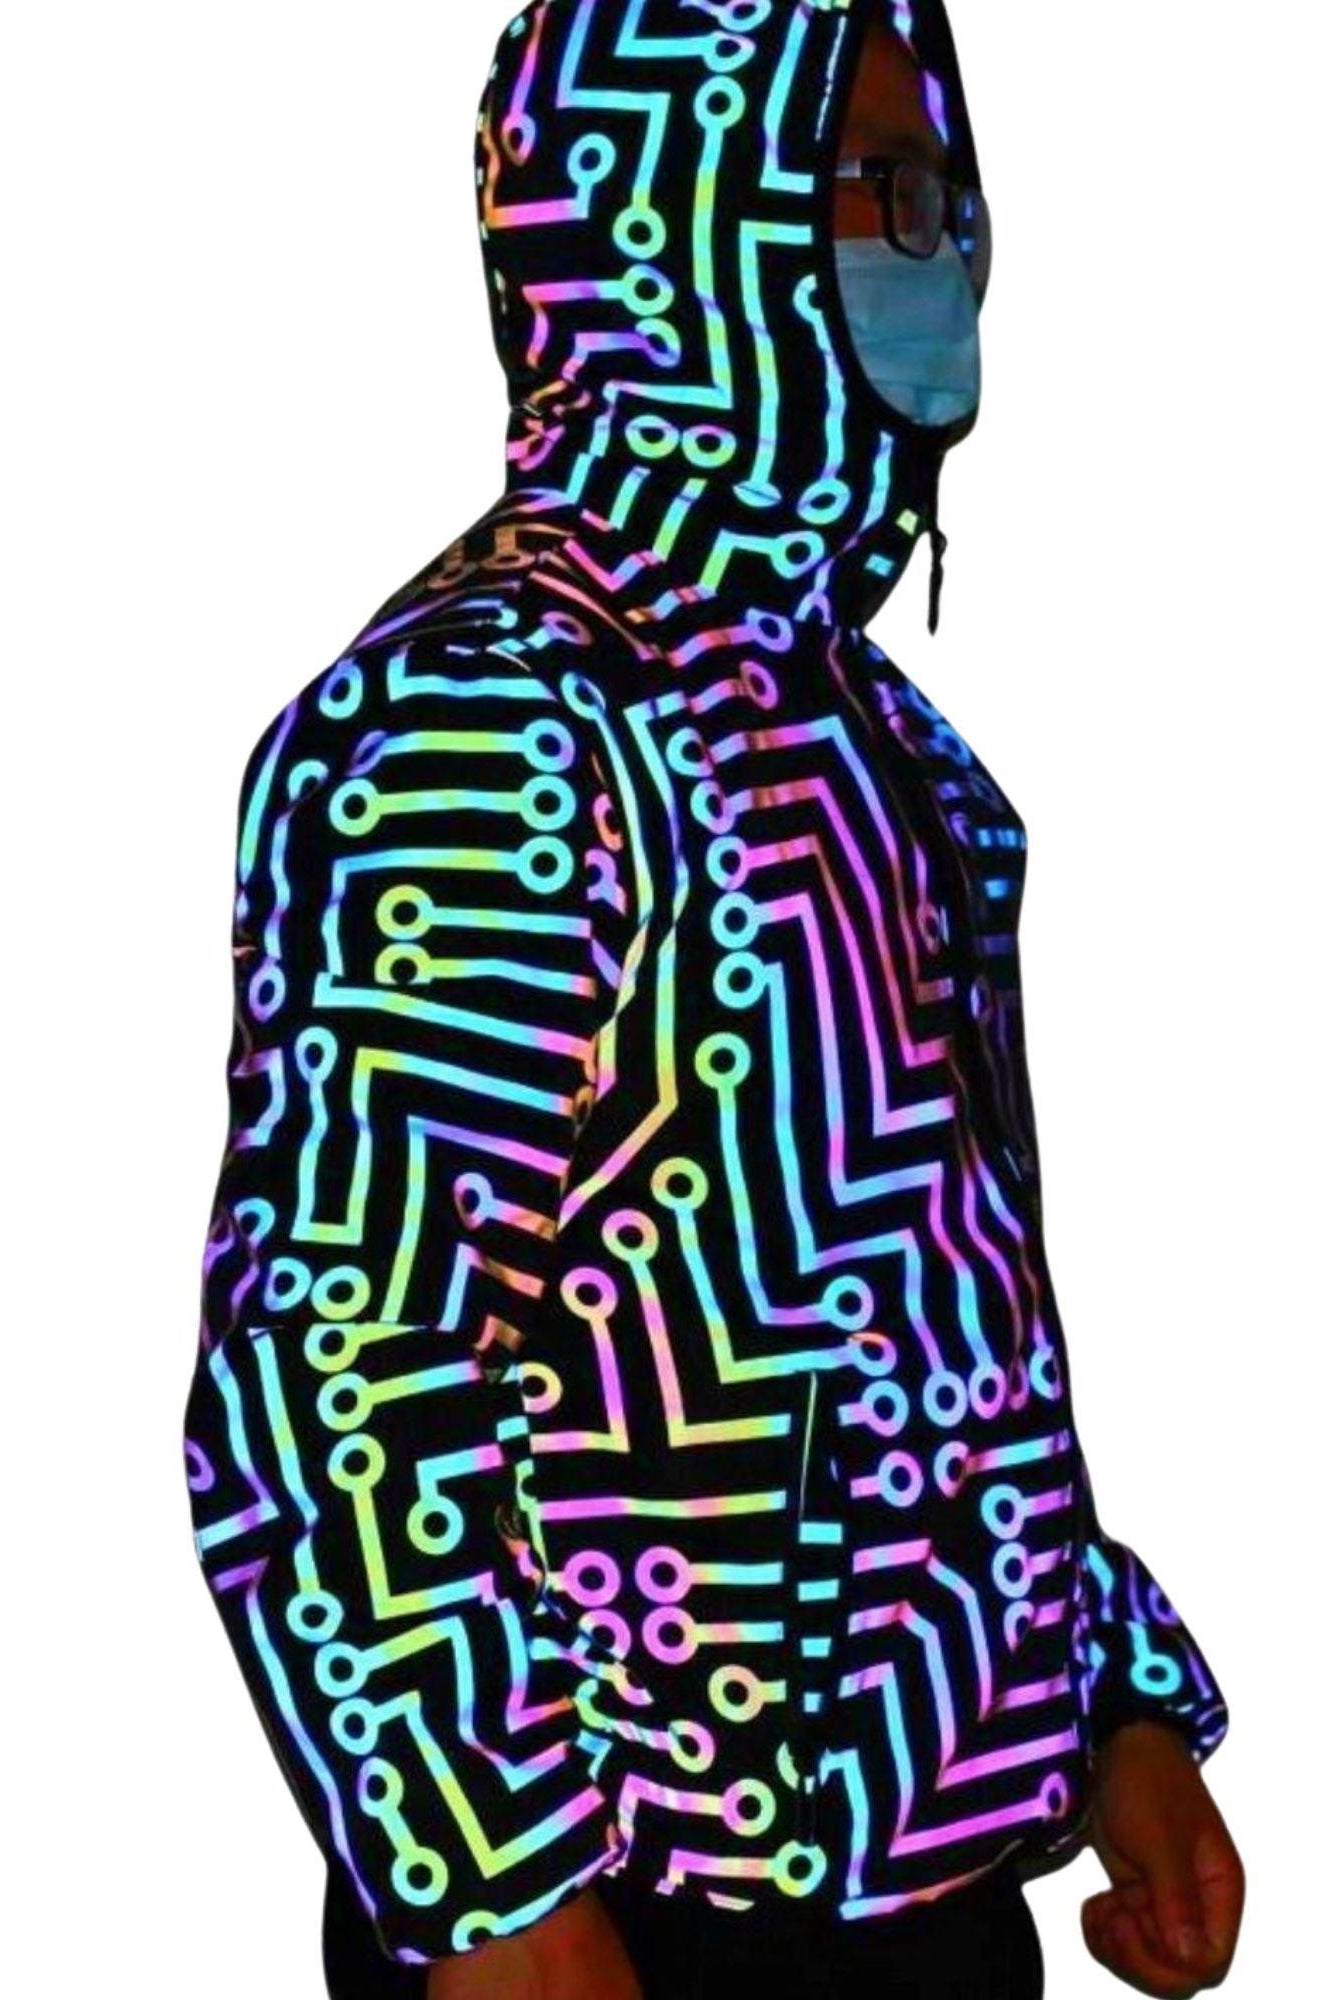 Men's Jackets Glow In Dark Neon Reflective Jacket Pants Circuit Board Pattern